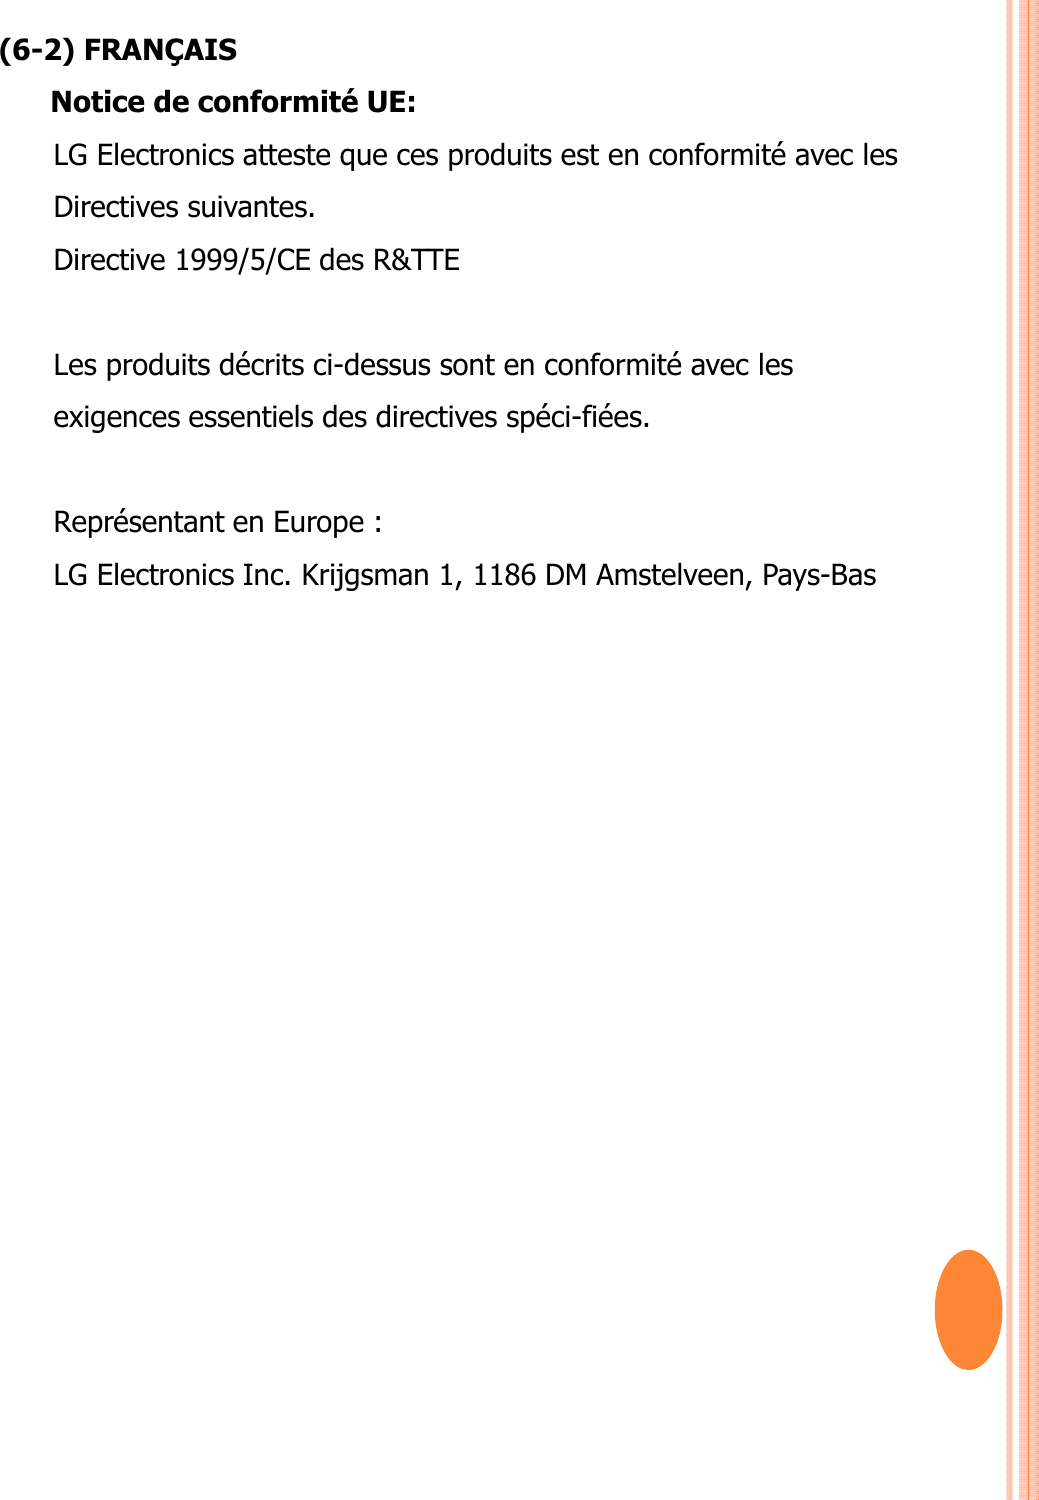 (6-2) FRANÇAISNotice de conformité UE: LG Electronics atteste que ces produits est en conformité avec les Directives suivantes.Directive 1999/5/CE des R&amp;TTE Les produits décrits ci-dessus sont en conformité avec lesexigences essentiels des directives spéci-fiées.Représentant en Europe : LG Electronics Inc. Krijgsman 1, 1186 DM Amstelveen, Pays-Bas